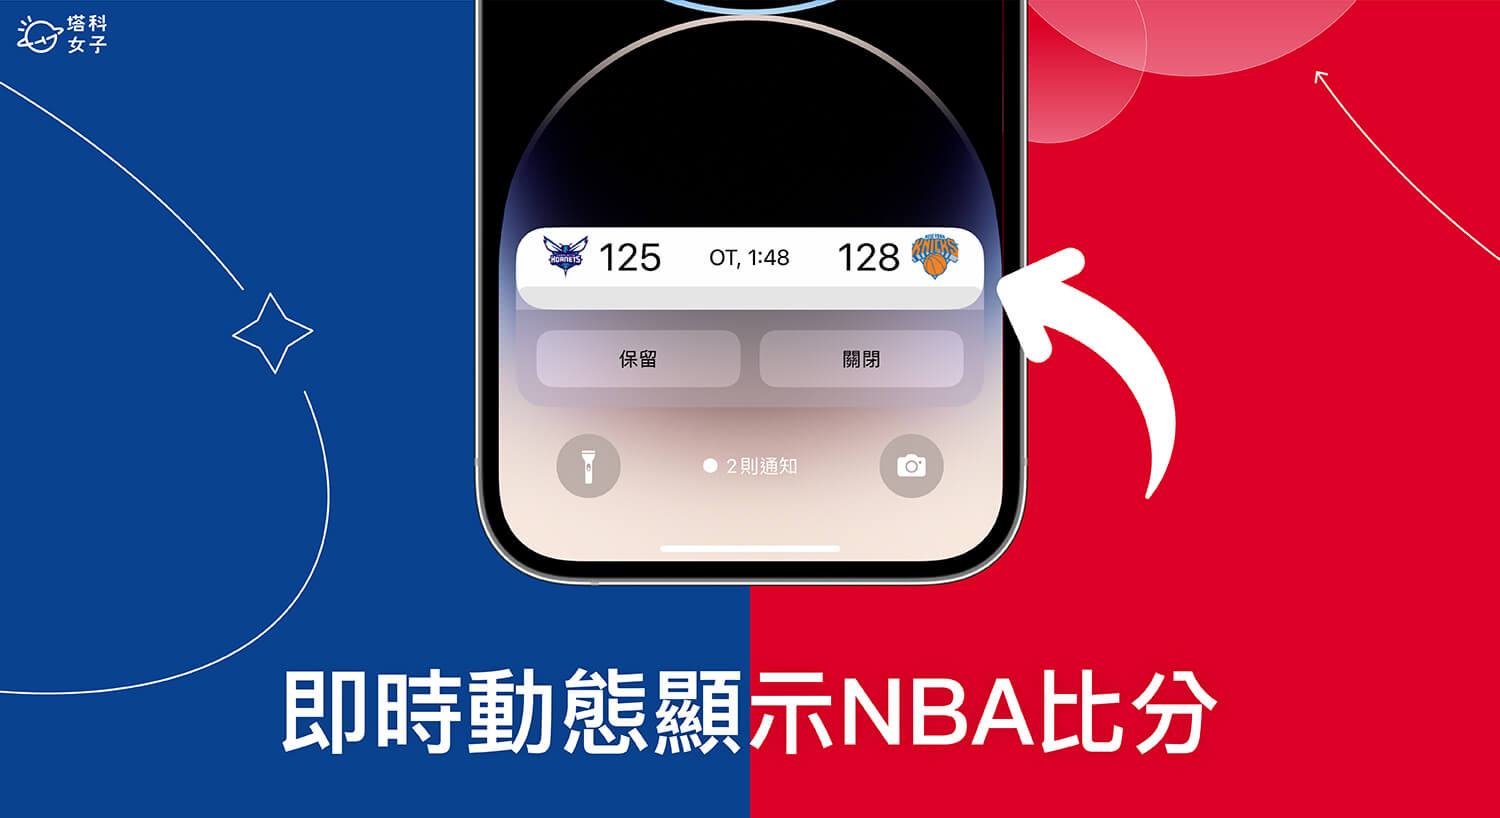 Sports Alerts App 在 iPhone 即時動態和動態島顯示 NBA 賽事比分